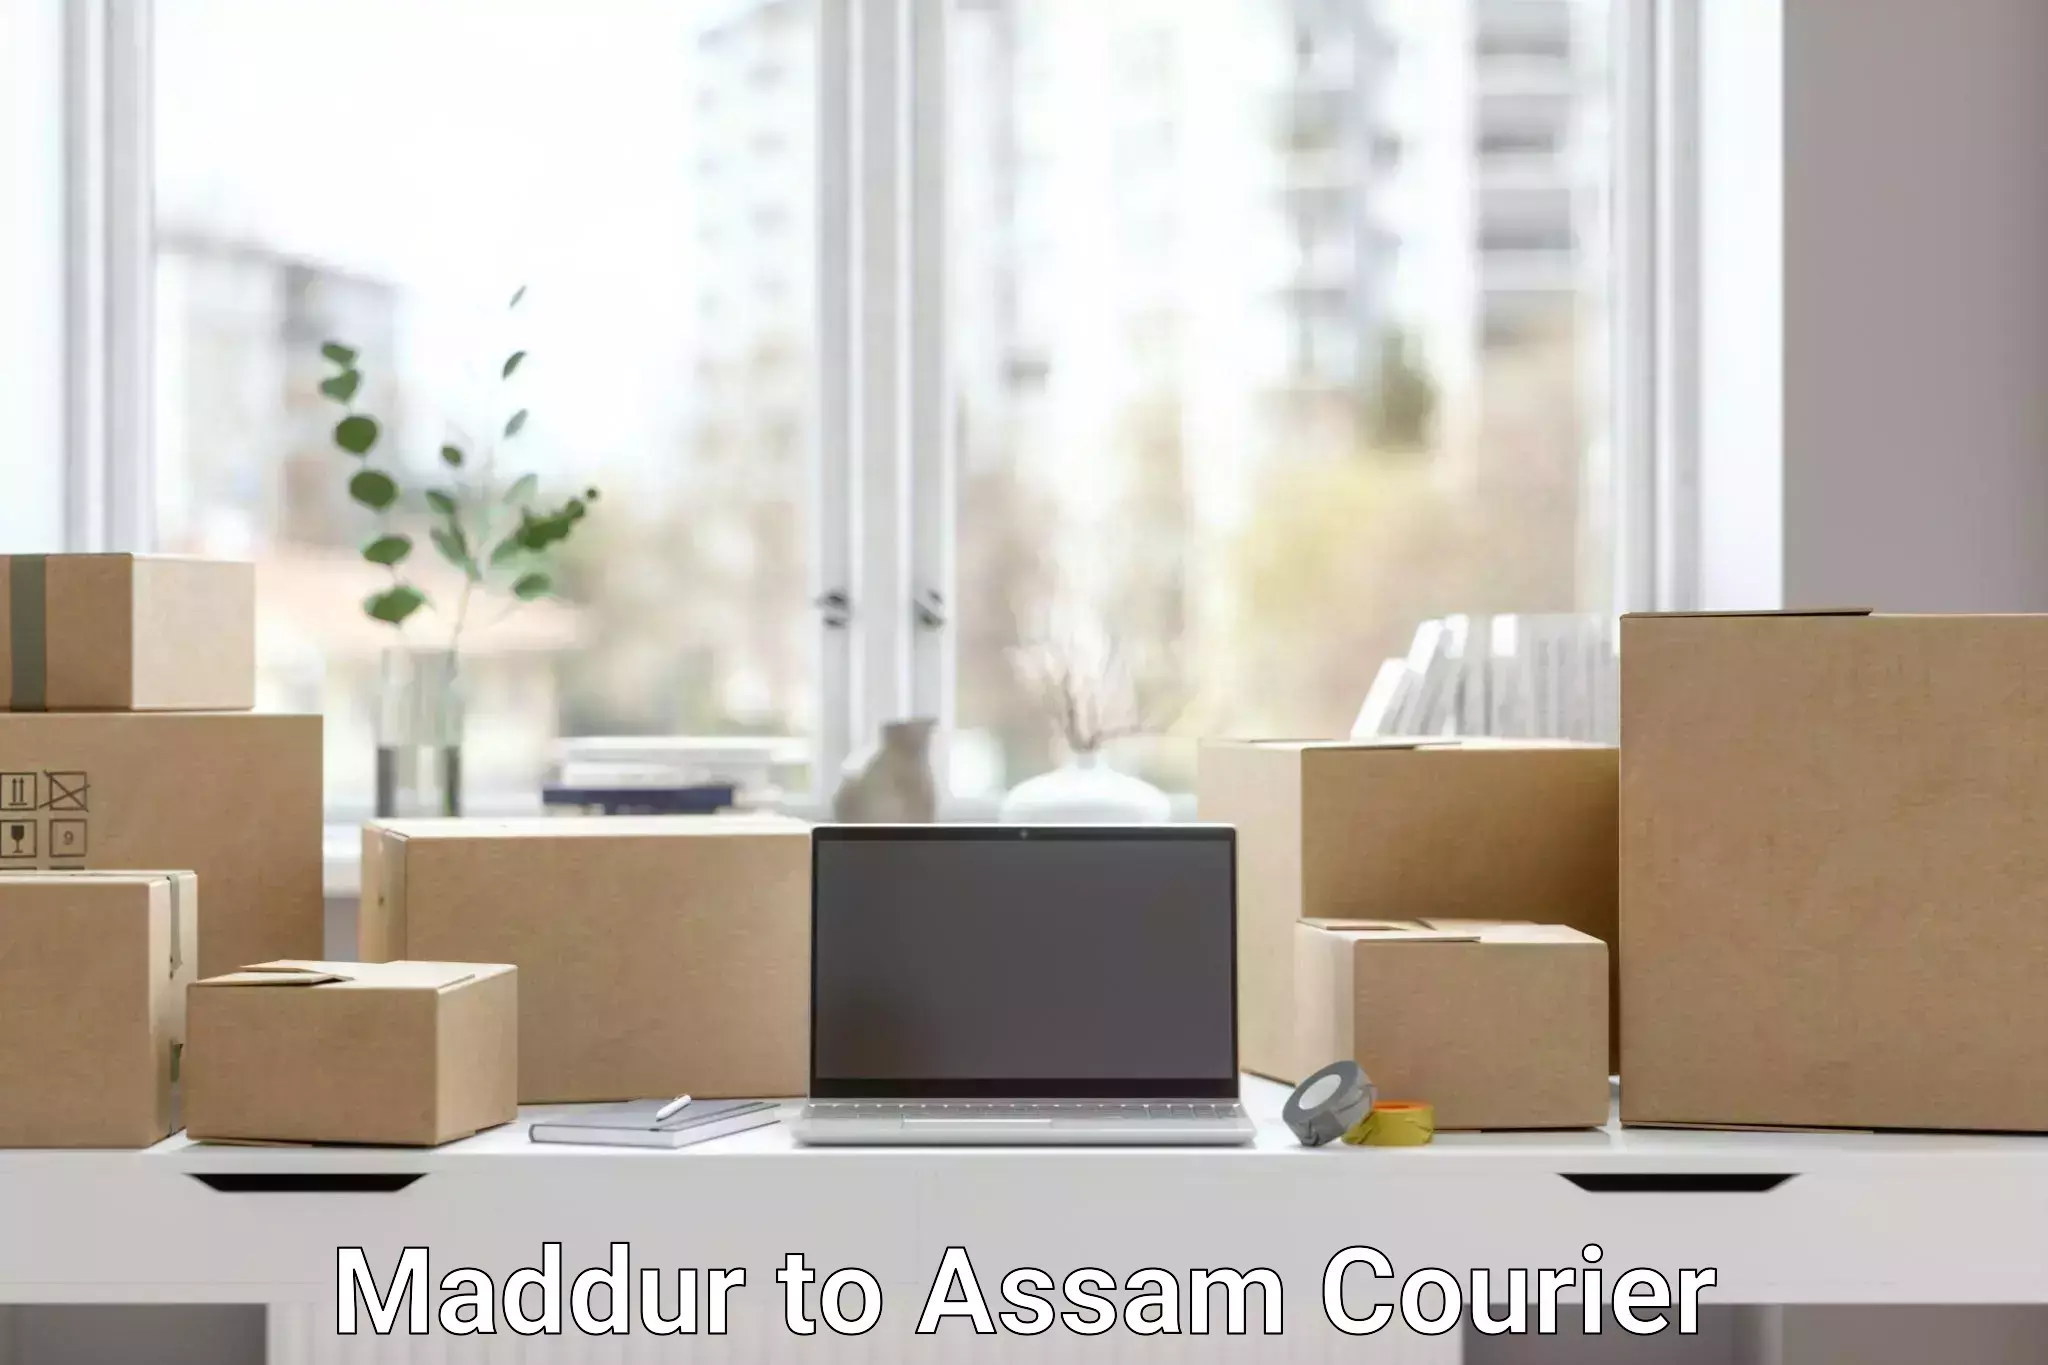 Quality courier services Maddur to Puranigudam